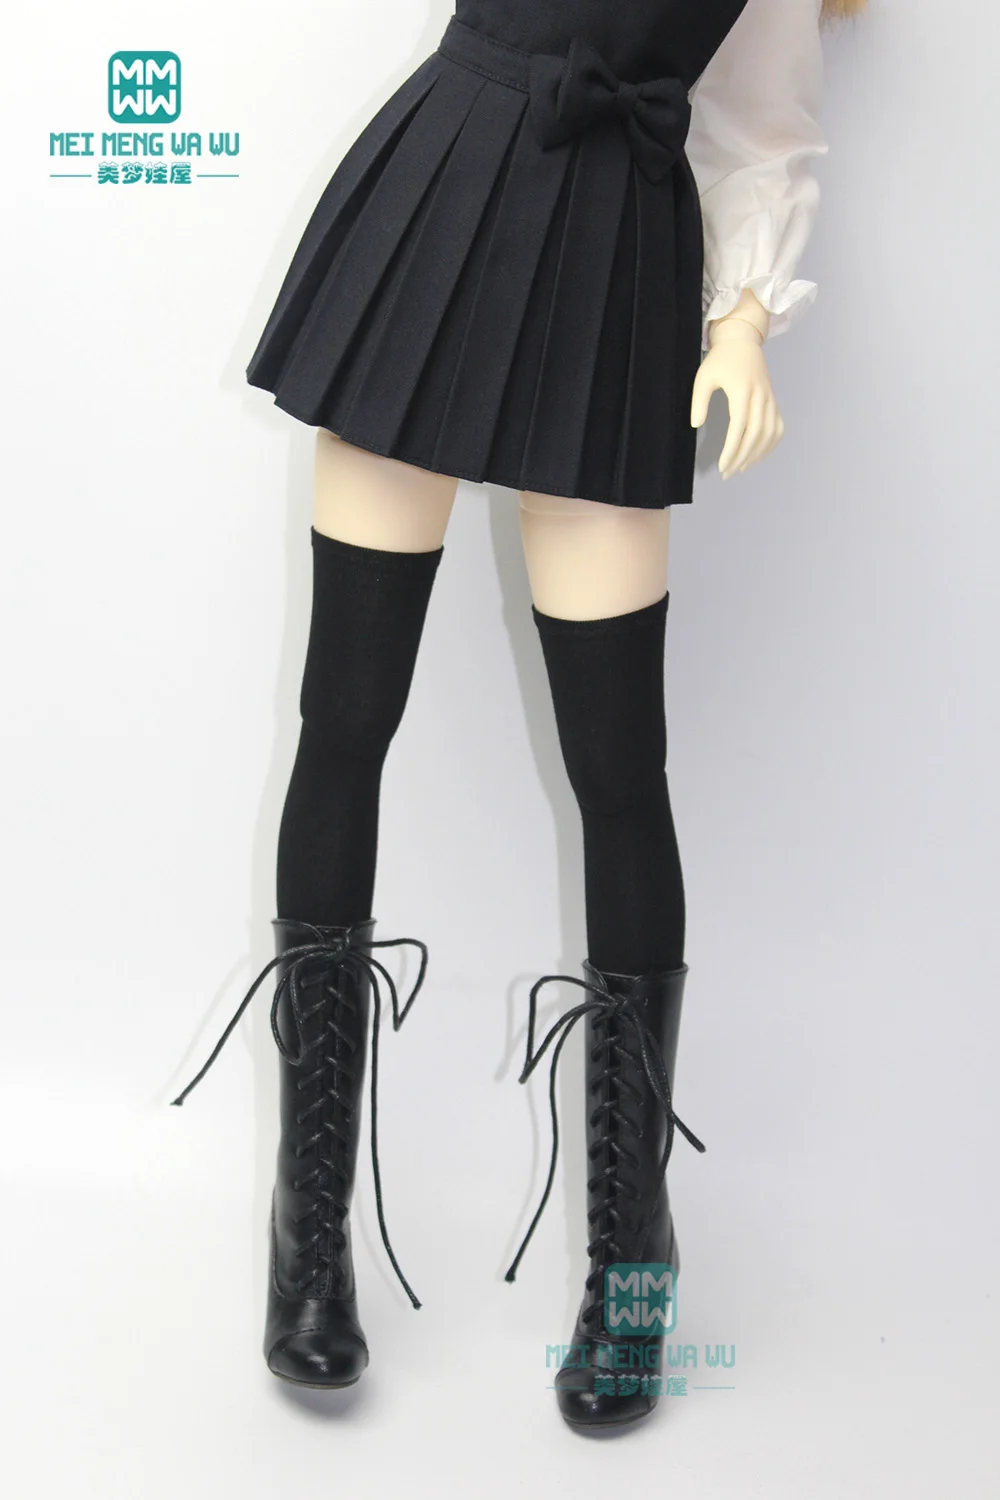 

Аксессуары для шарнирных кукол 27 см-65 см 1/6 1/4 1/3 BJD DD SD YOSD, модные черные длинные носки, кружевные чулки